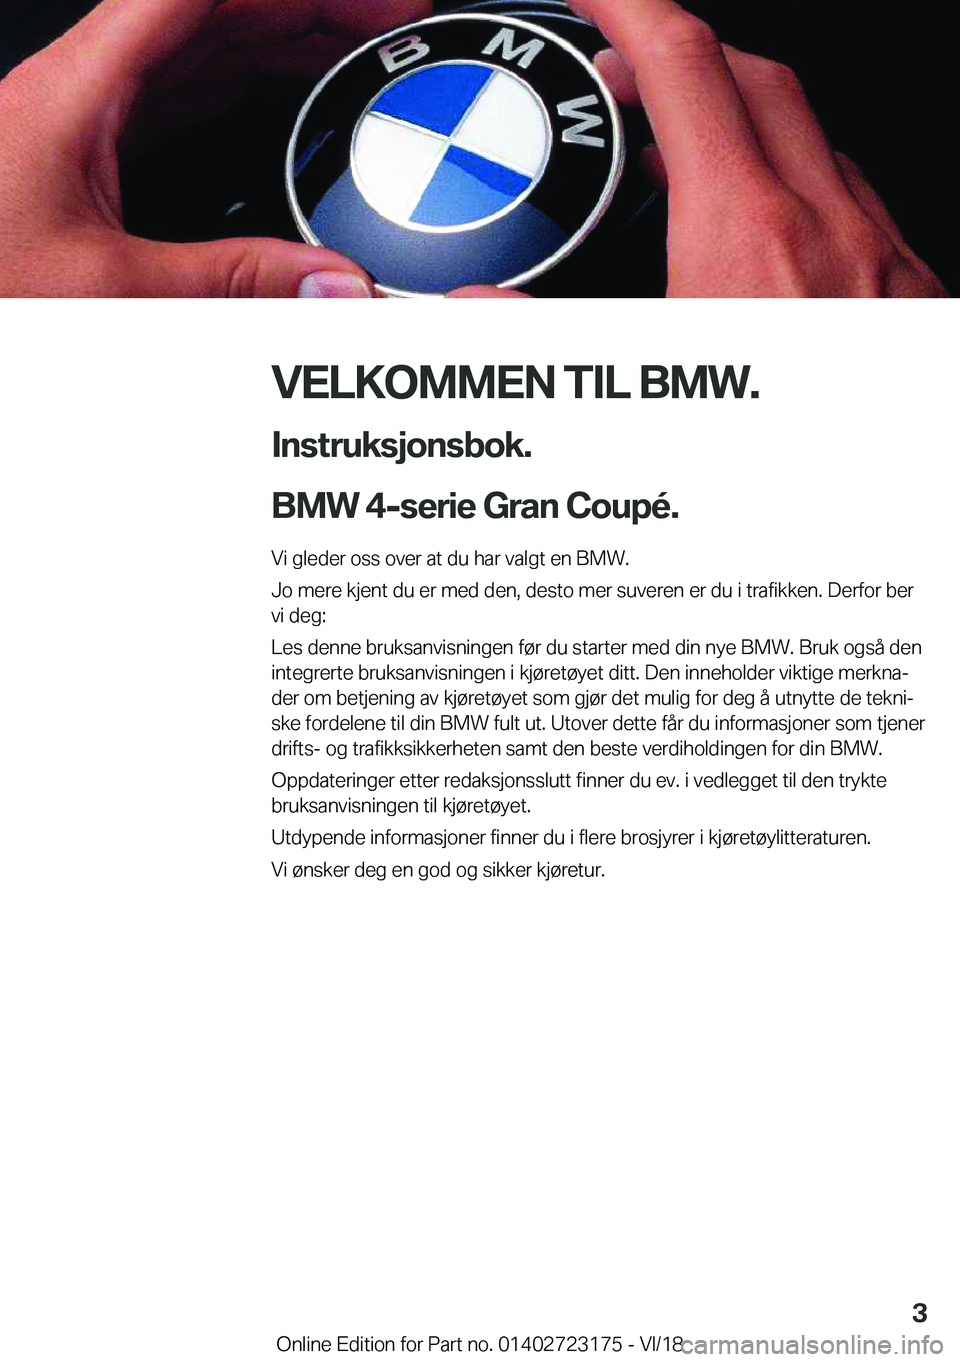 BMW 4 SERIES GRAN COUPE 2019  InstruksjonsbØker (in Norwegian) �V�E�L�K�O�M�M�E�N��T�I�L��B�M�W�.�I�n�s�t�r�u�k�s�j�o�n�s�b�o�k�.
�B�M�W��4�-�s�e�r�i�e��G�r�a�n��C�o�u�p�